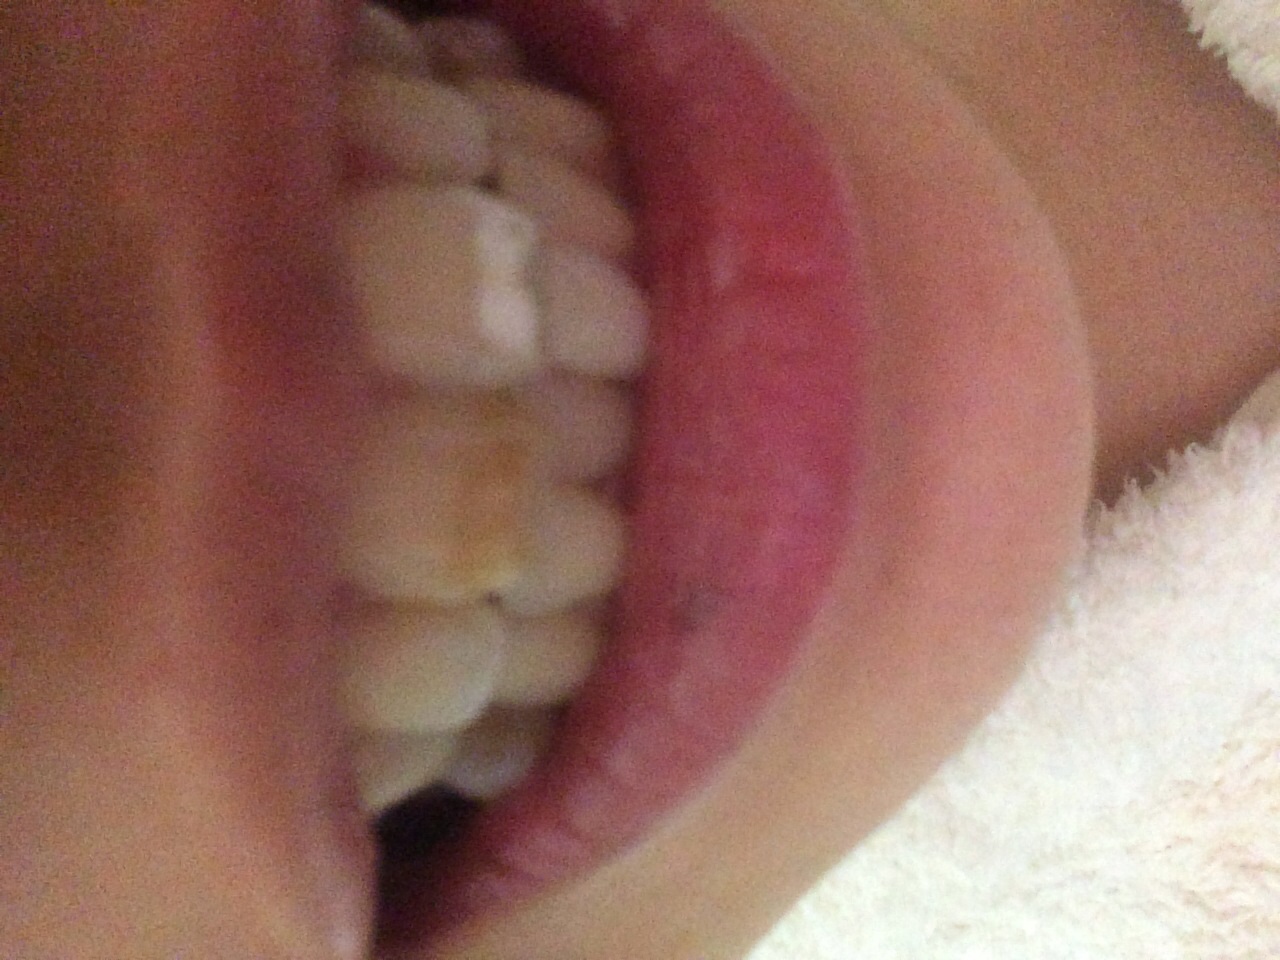 [写真あり] 自分で削ってしまい歯が変色してしまいました 歯チャンネル歯科相談室